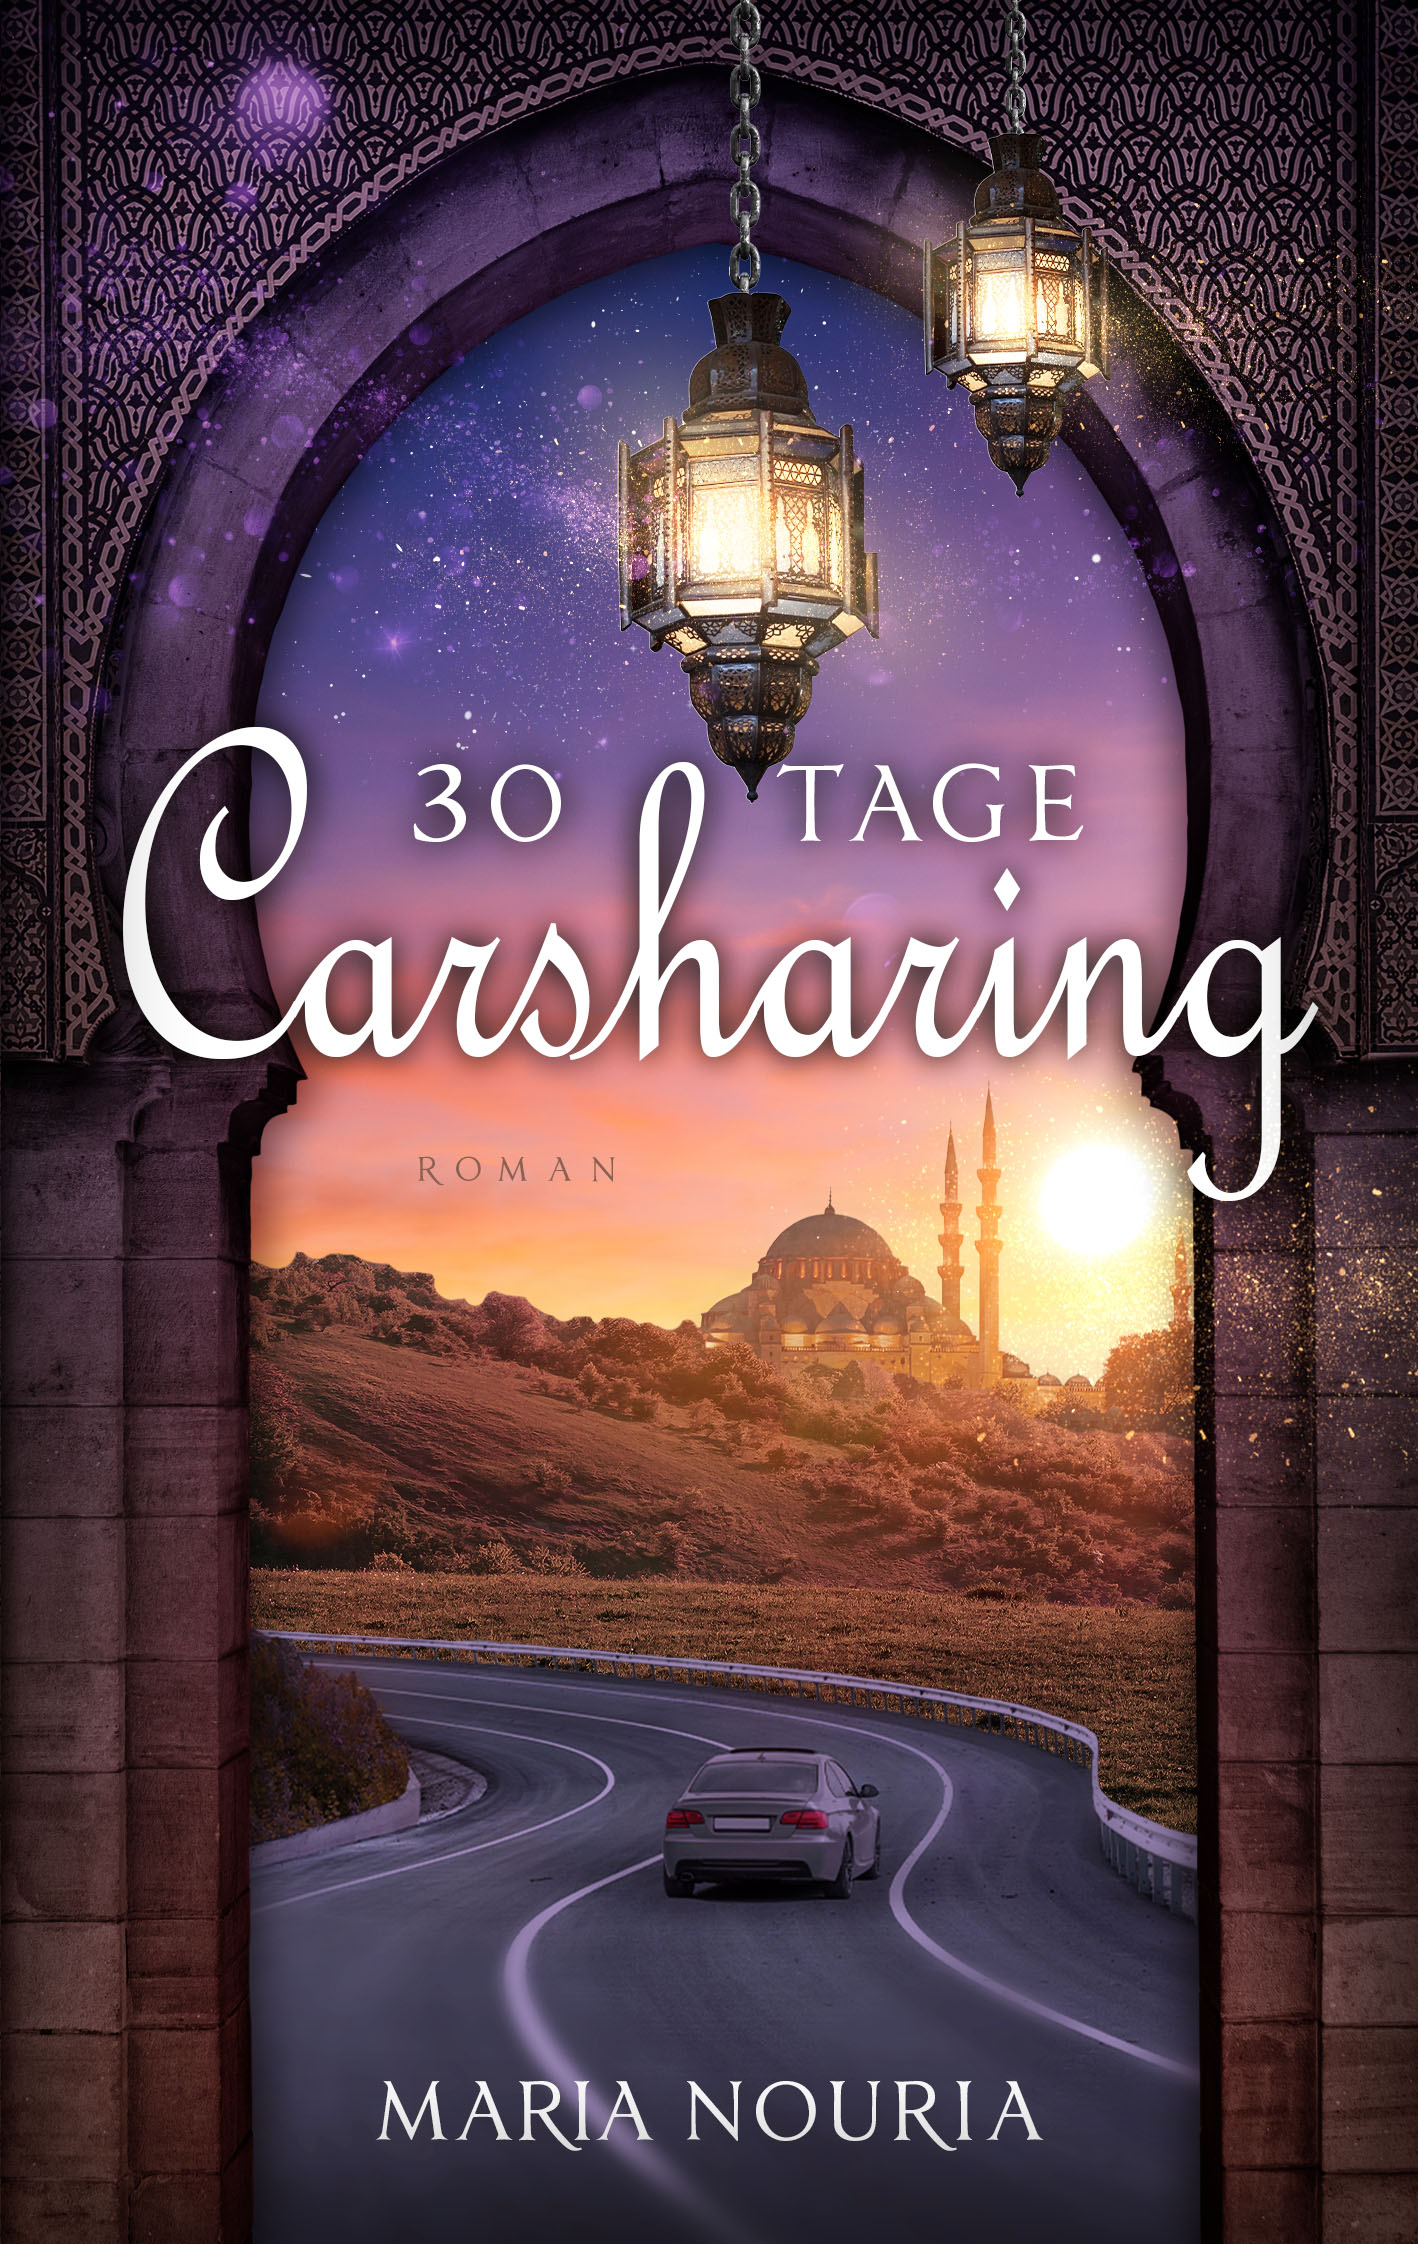 30 Tage Carsharing